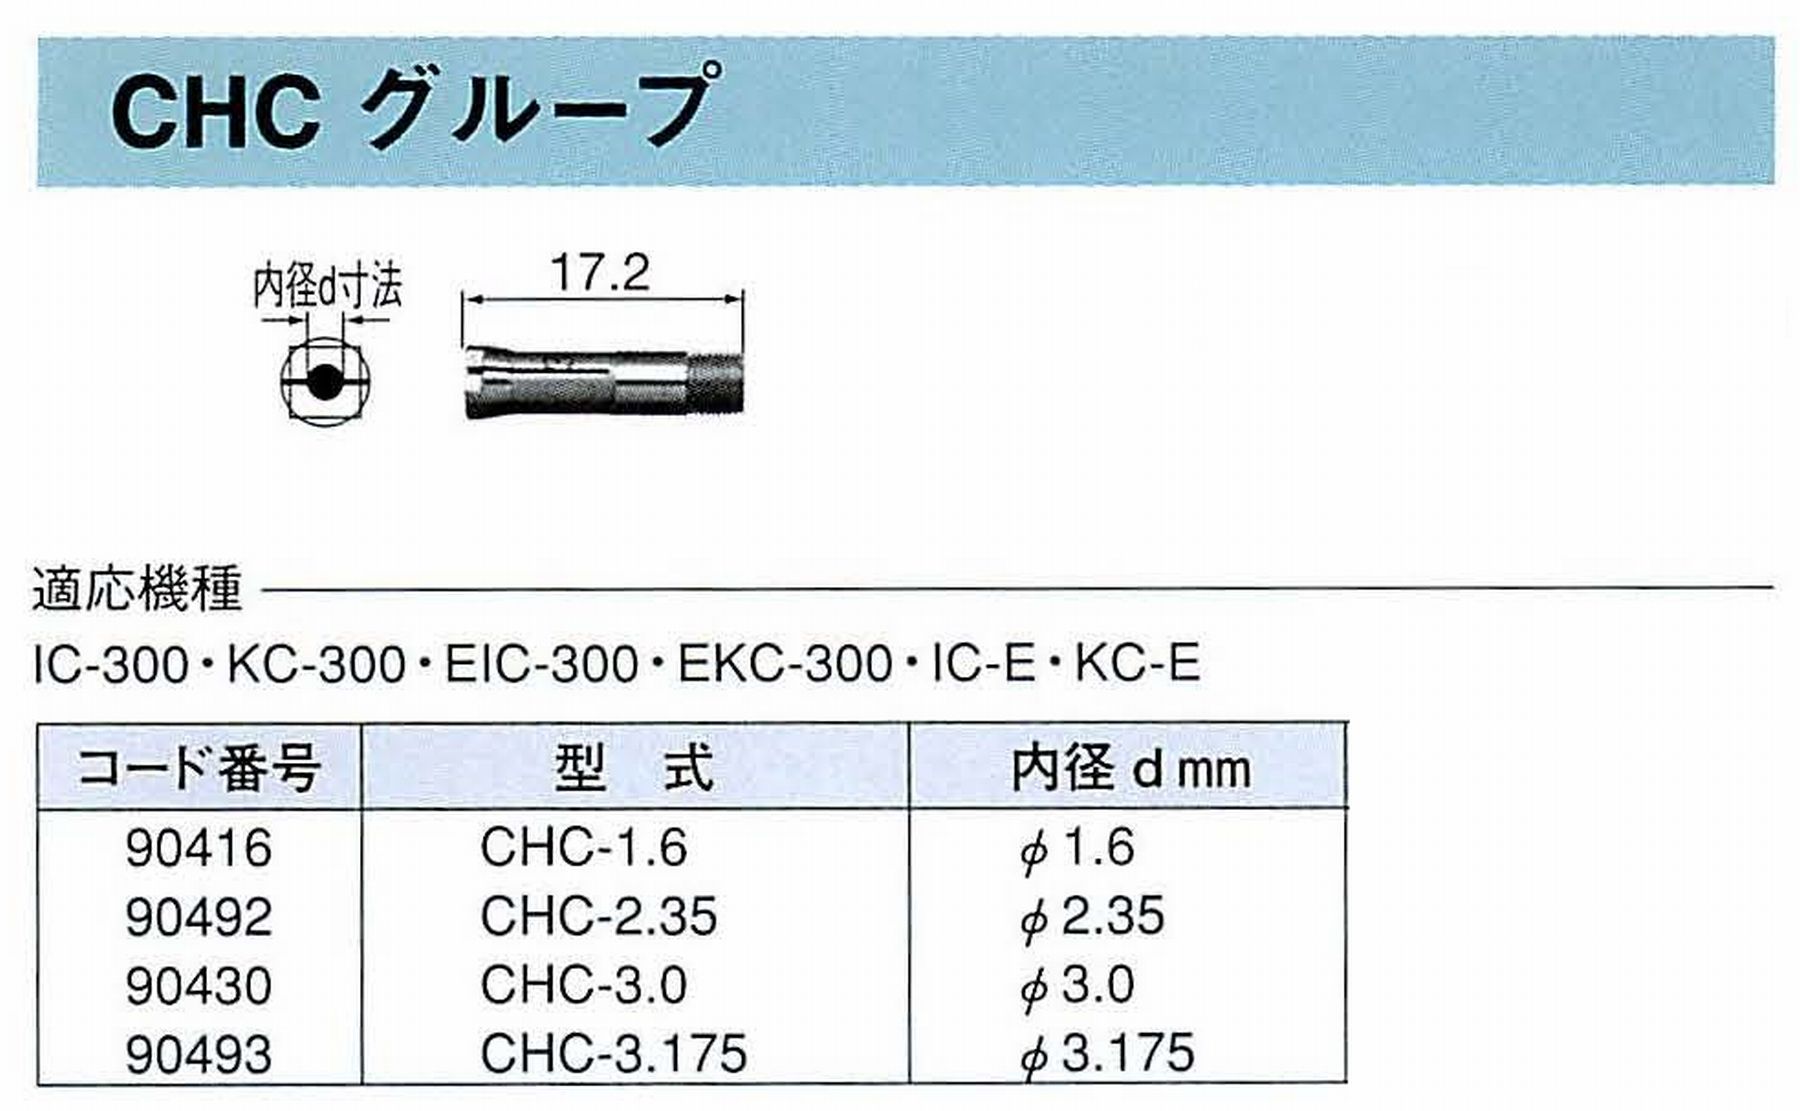 ナカニシ/NAKANISHI コレットチャック コード番号 90416 型式 CHC-1.6 内径:Φ1.6